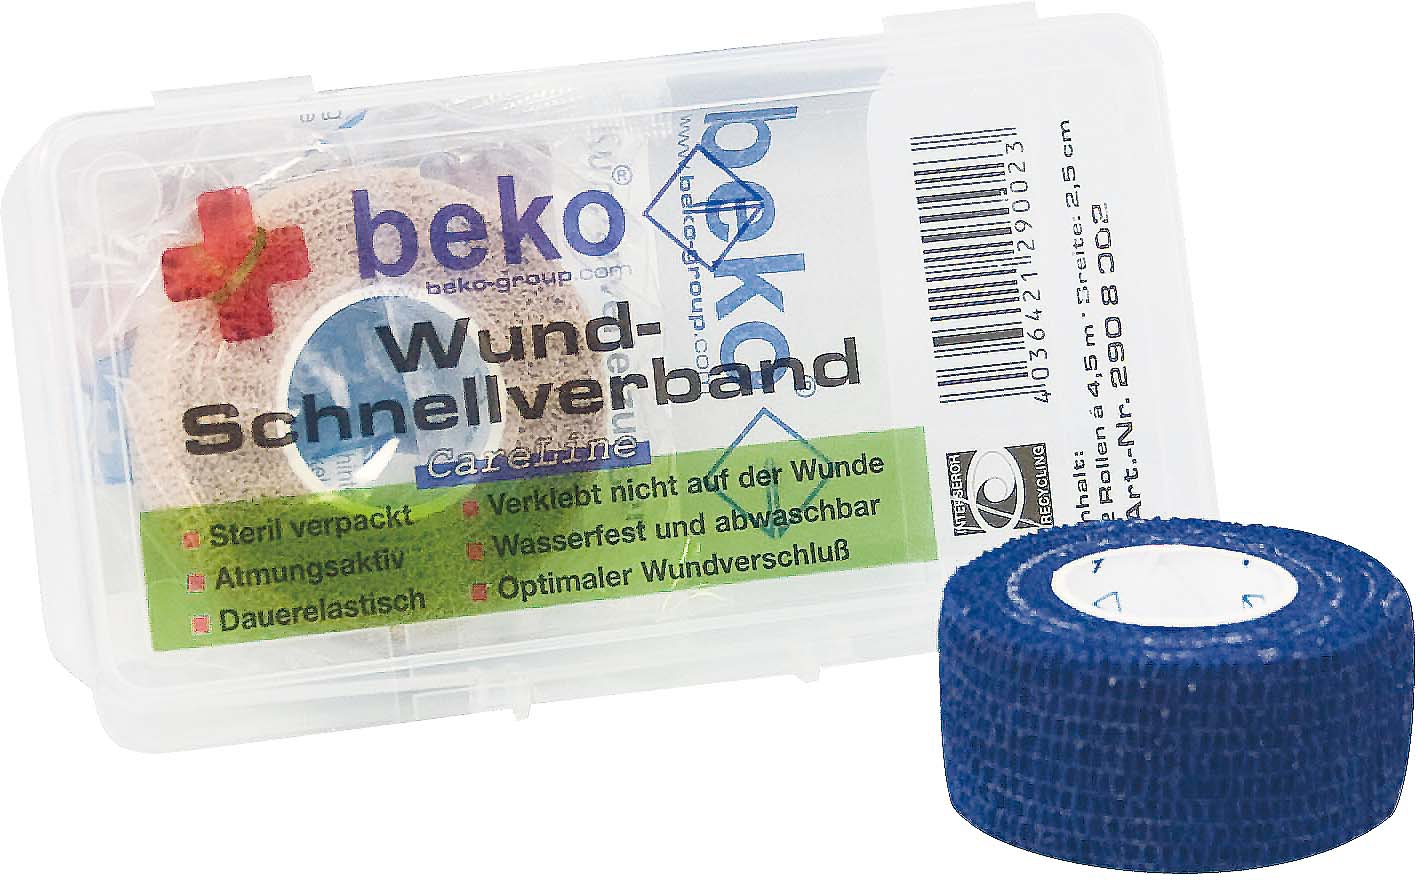 BEKO Wund-Schnellverband Box 2 Rollen a 4,5 m., 25 mm breit